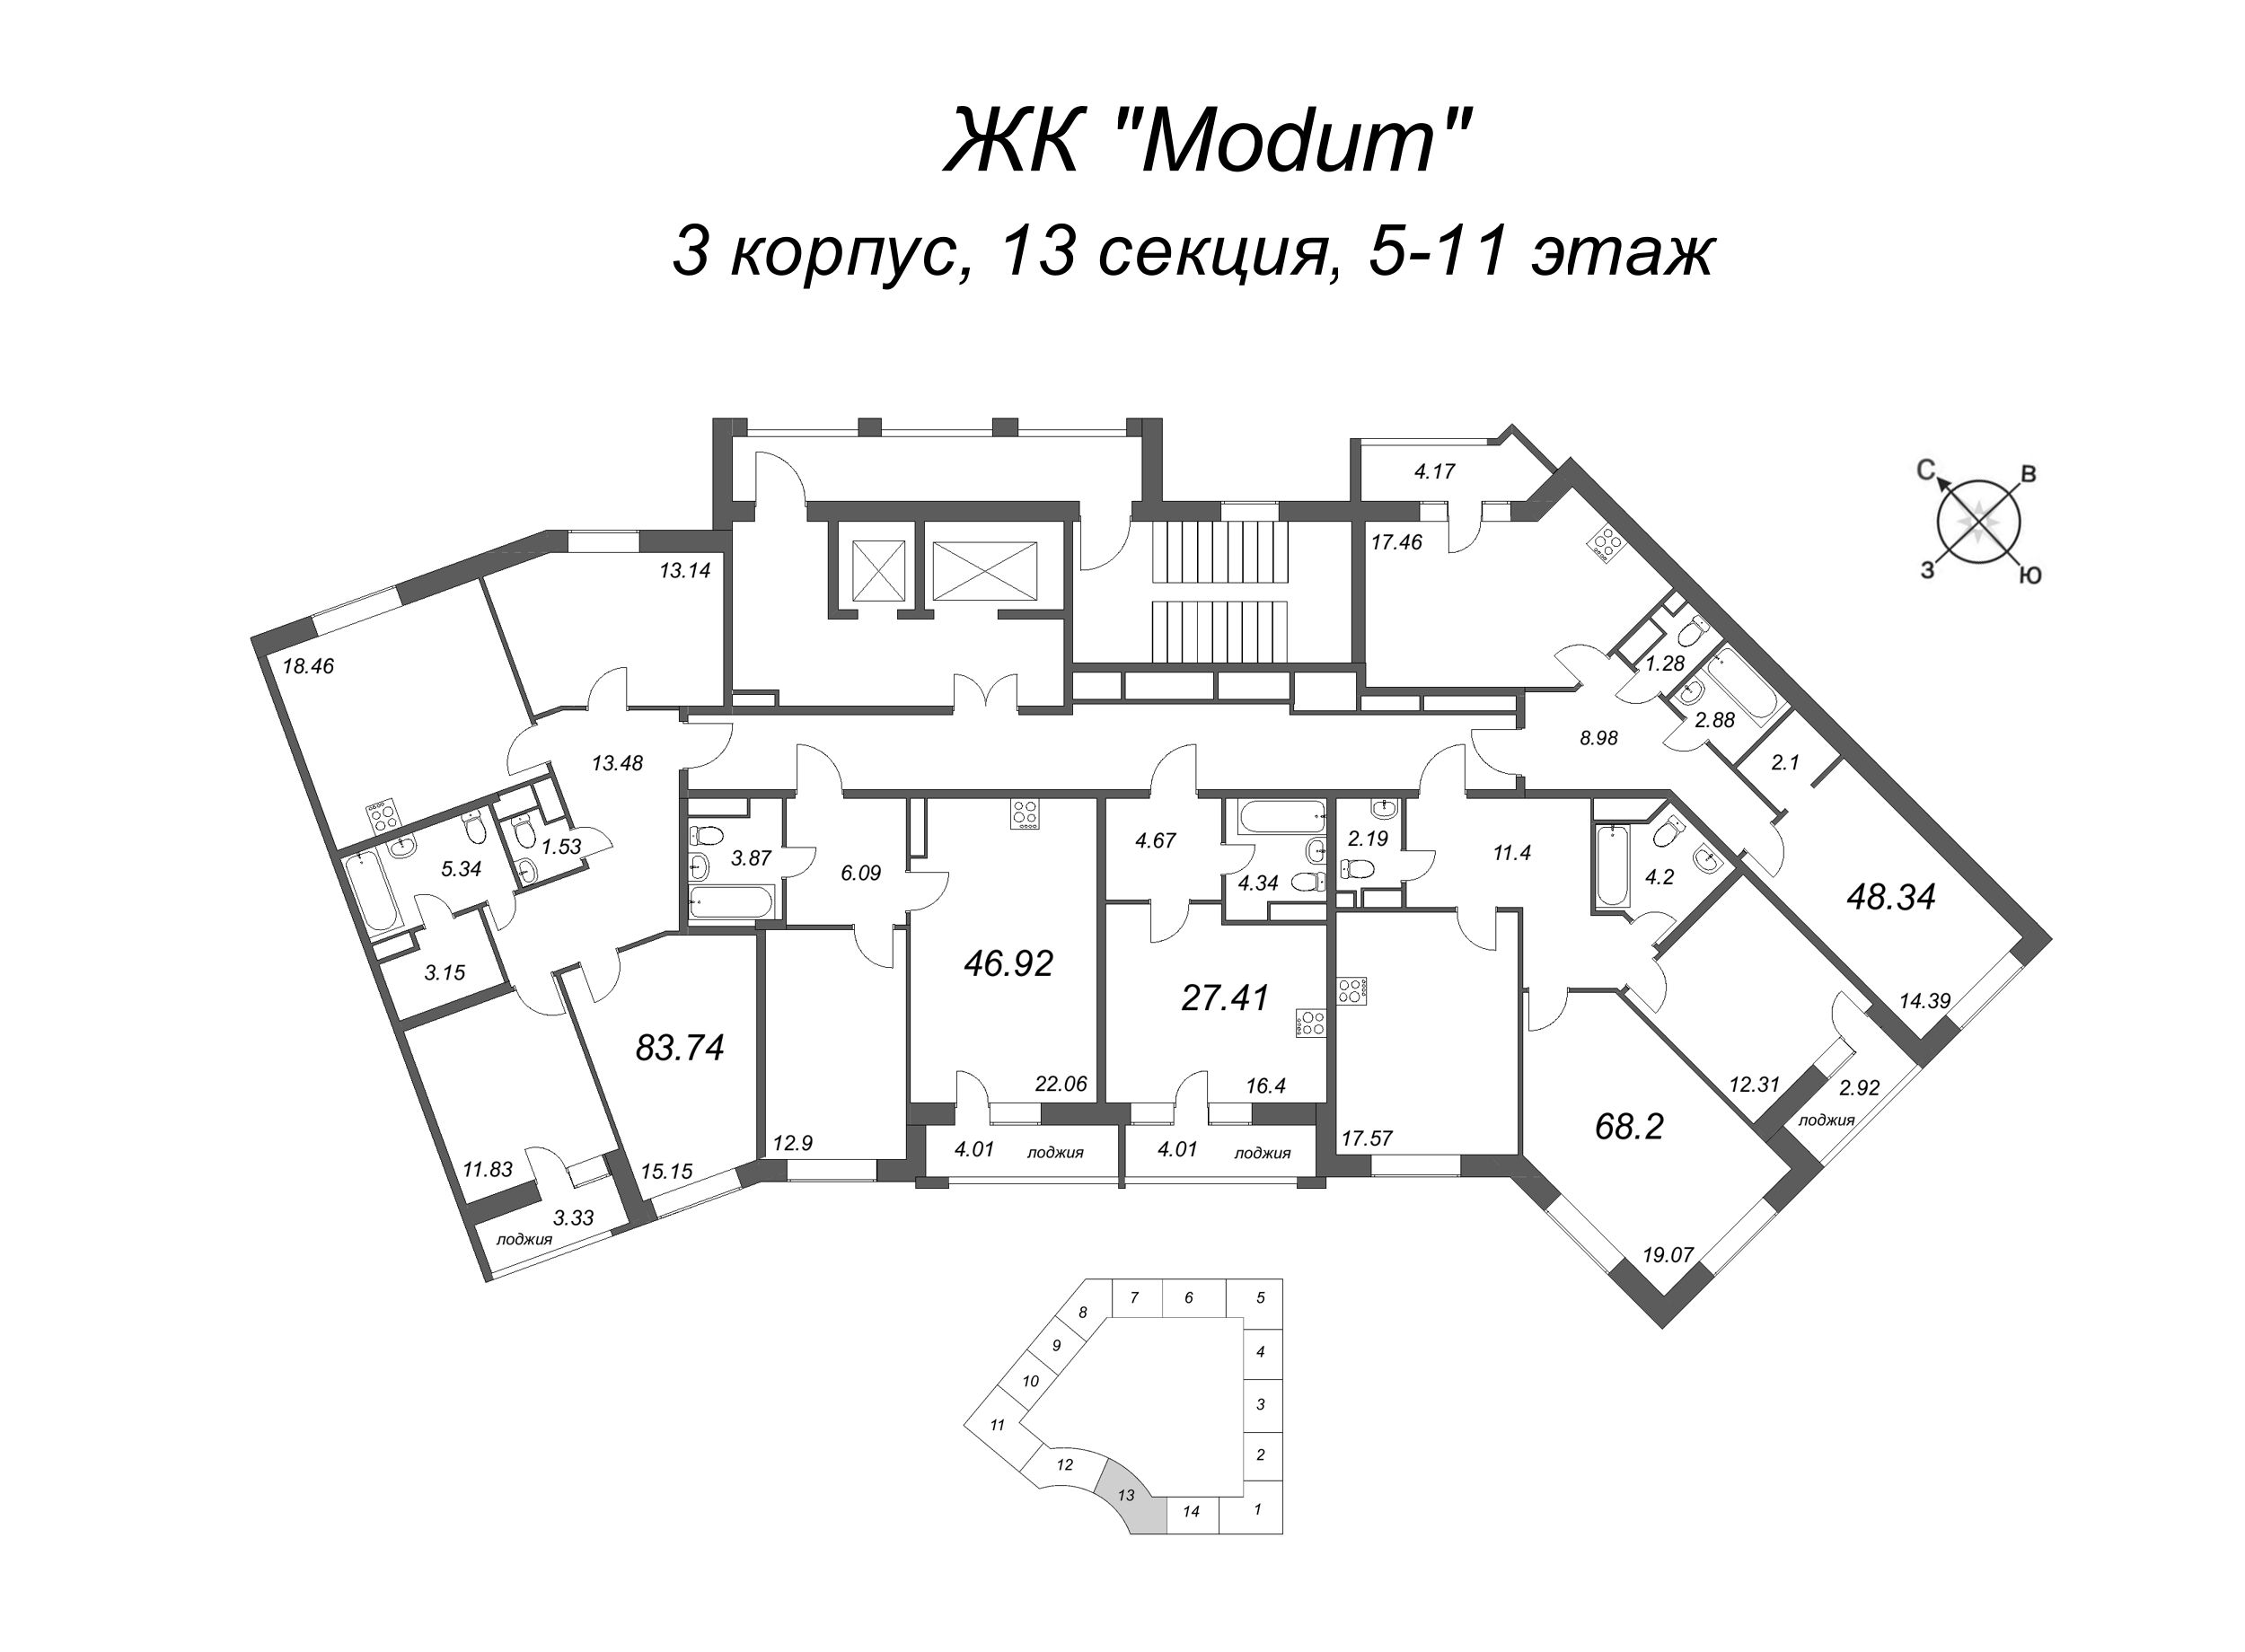 2-комнатная (Евро) квартира, 48.34 м² в ЖК "Modum" - планировка этажа